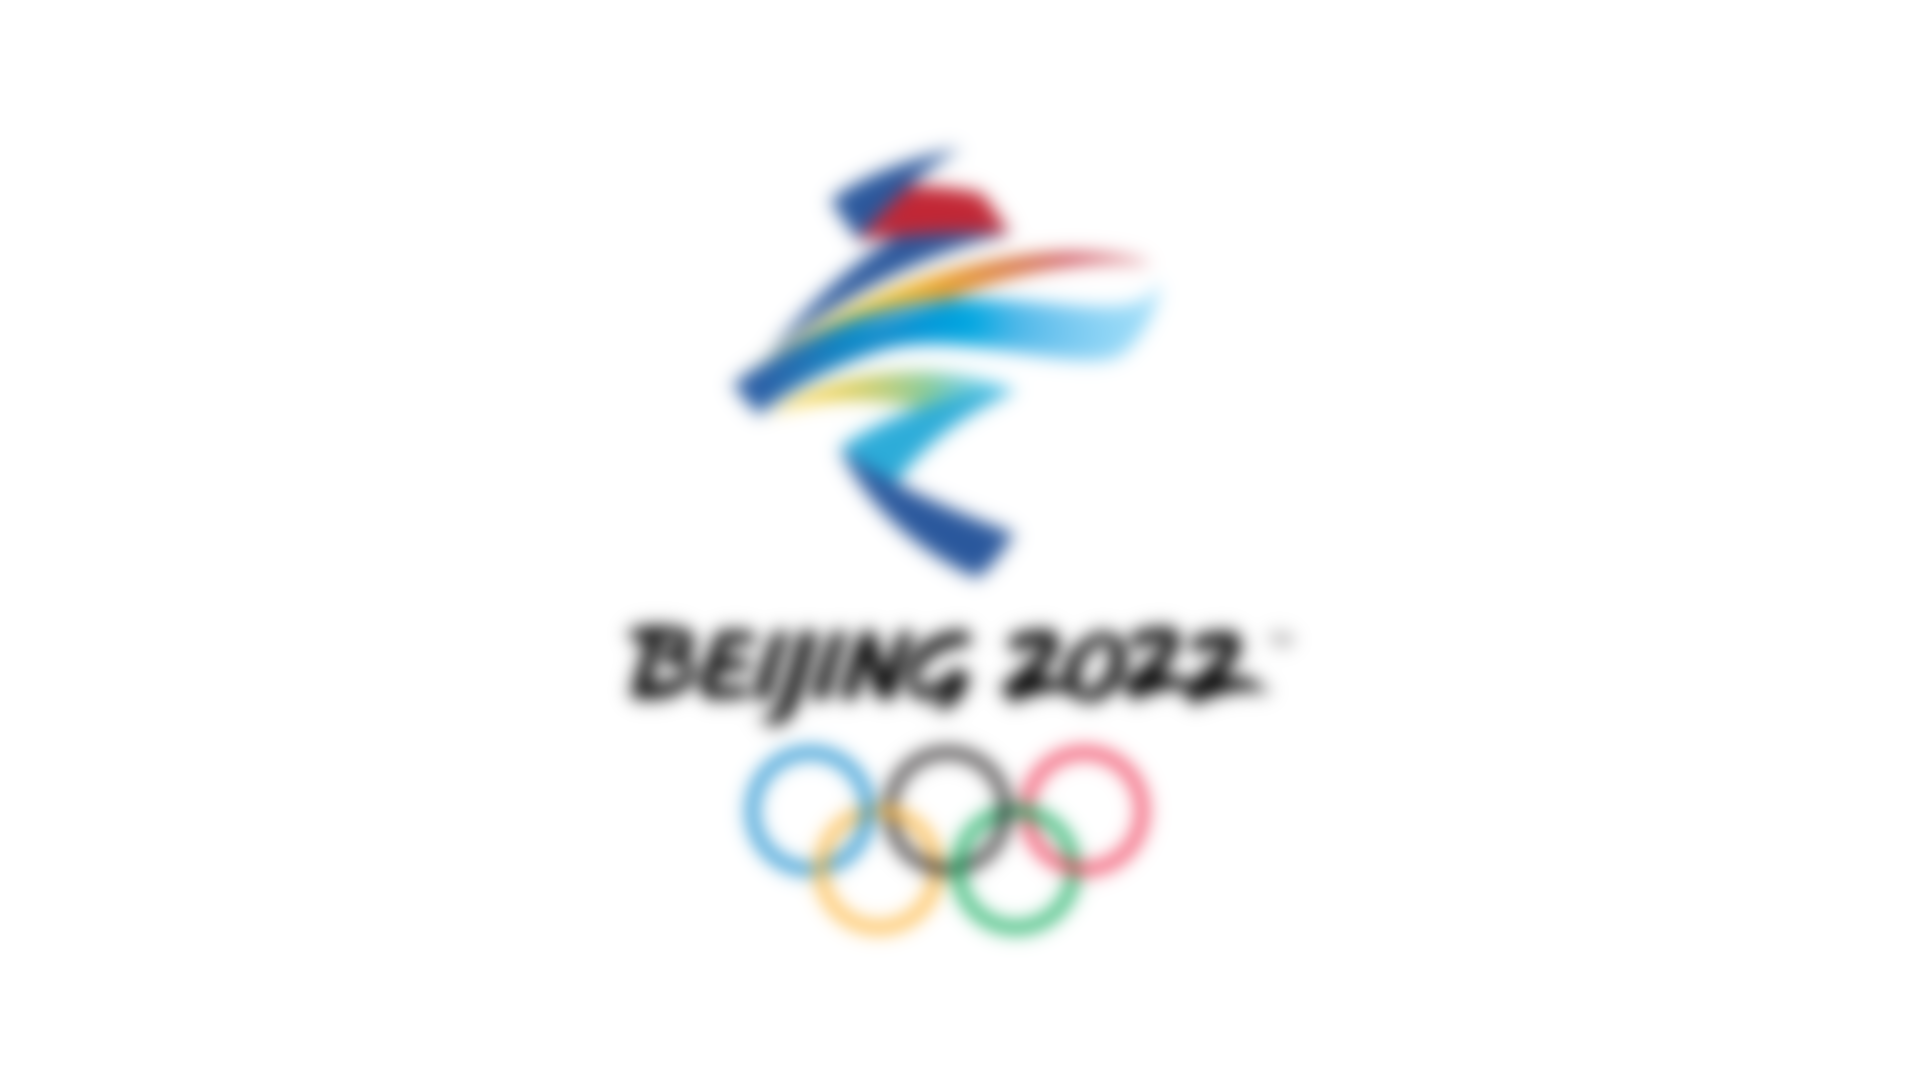 北京2022オリンピックのエンブレム